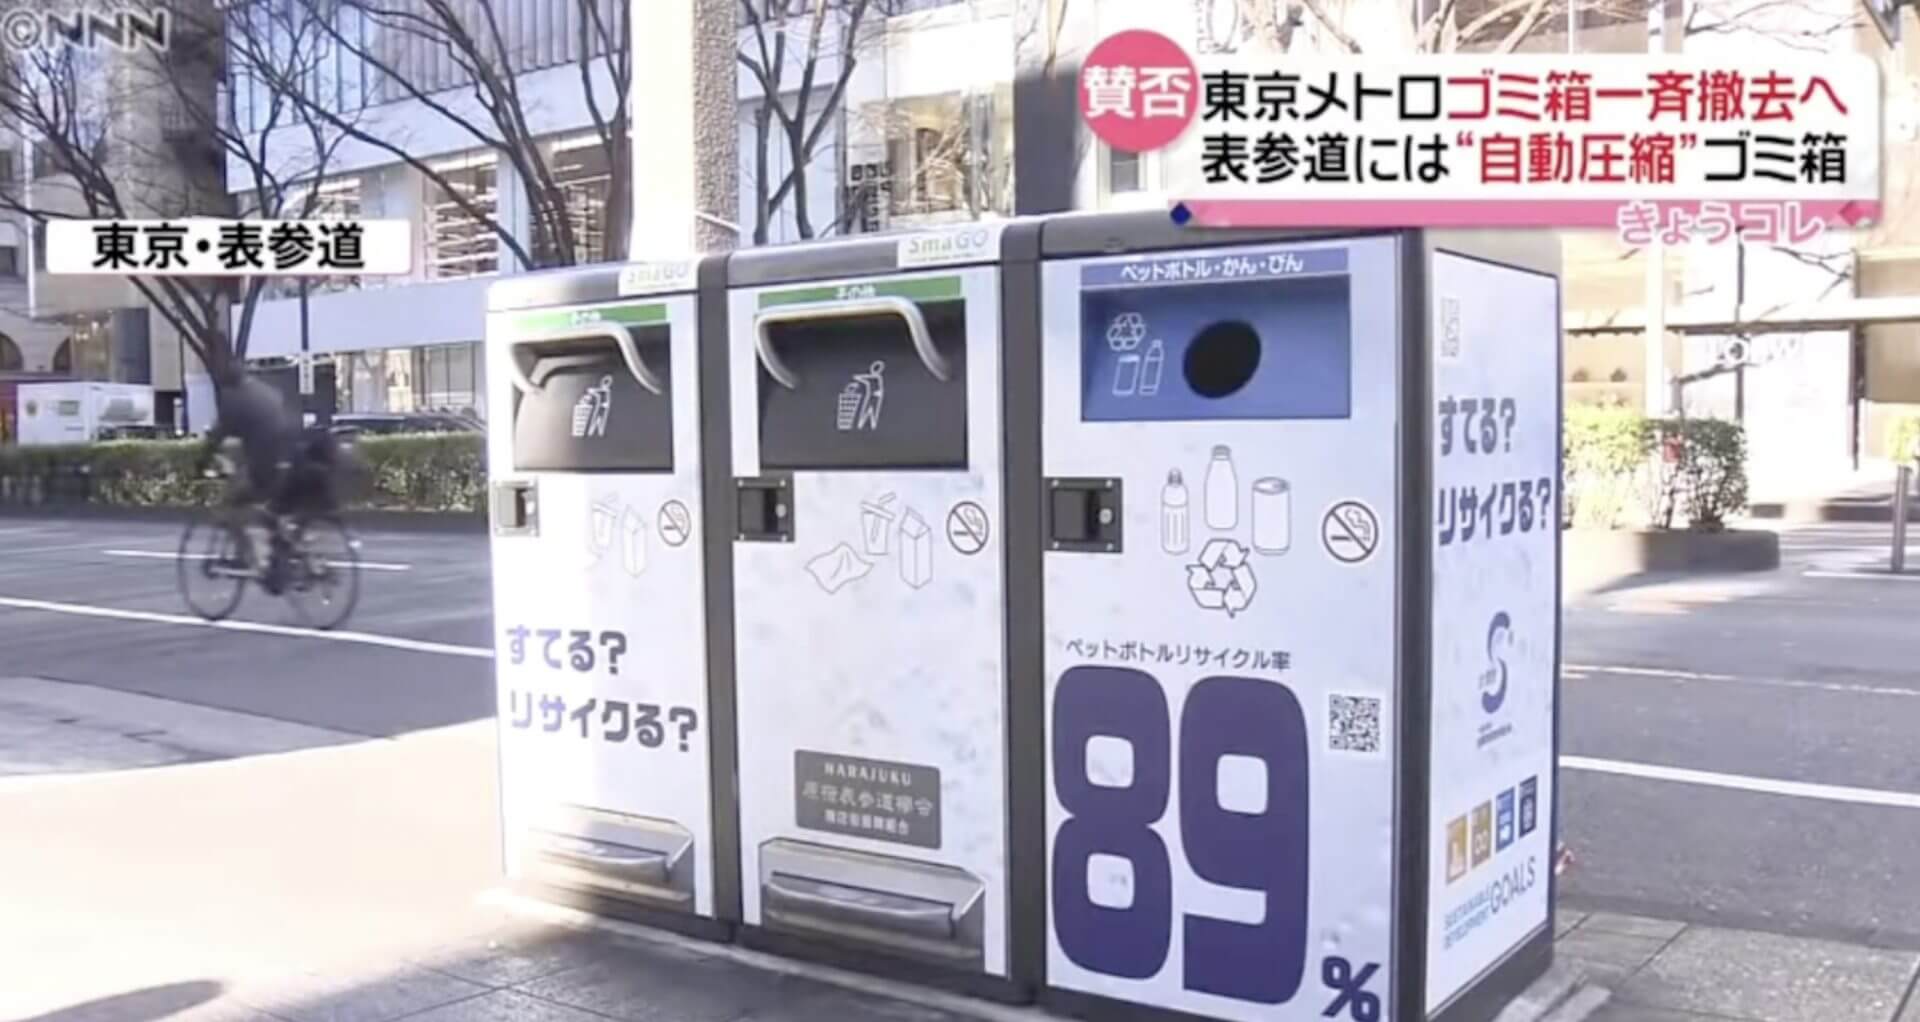 Metrô de Tóquio troca todas as suas lixeiras por lixeiras inteligentes